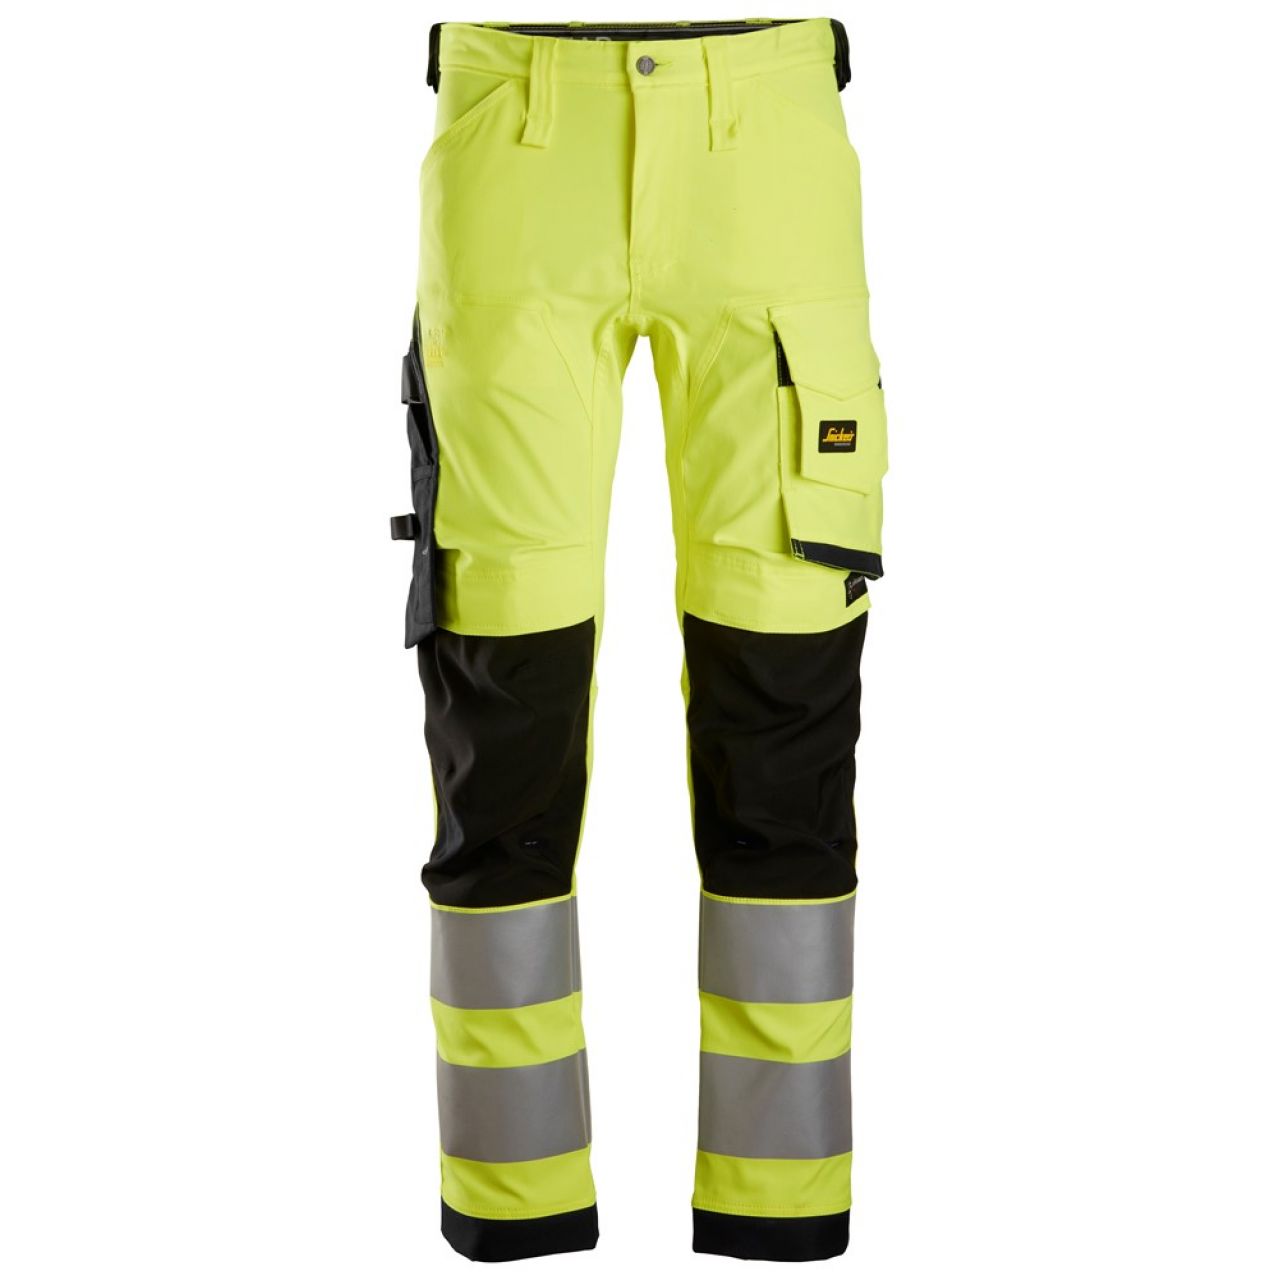 6343 Pantalones largos de trabajo elásticos de alta visibilidad clase 2 amarillo-negro talla 256